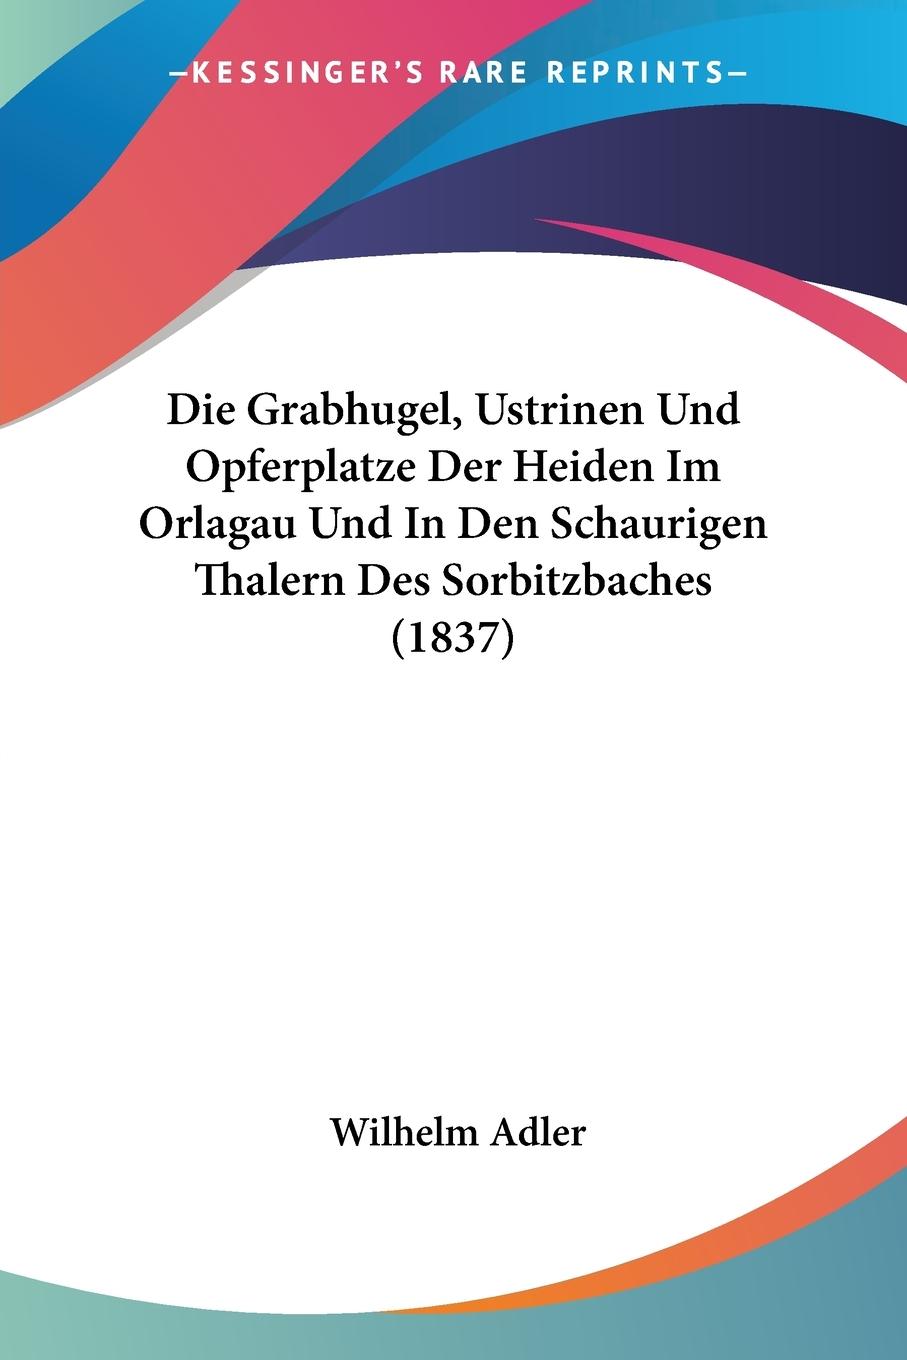 Die Grabhugel, Ustrinen Und Opferplatze Der Heiden Im Orlagau Und In Den Schaurigen Thalern Des Sorbitzbaches (1837) - Adler, Wilhelm